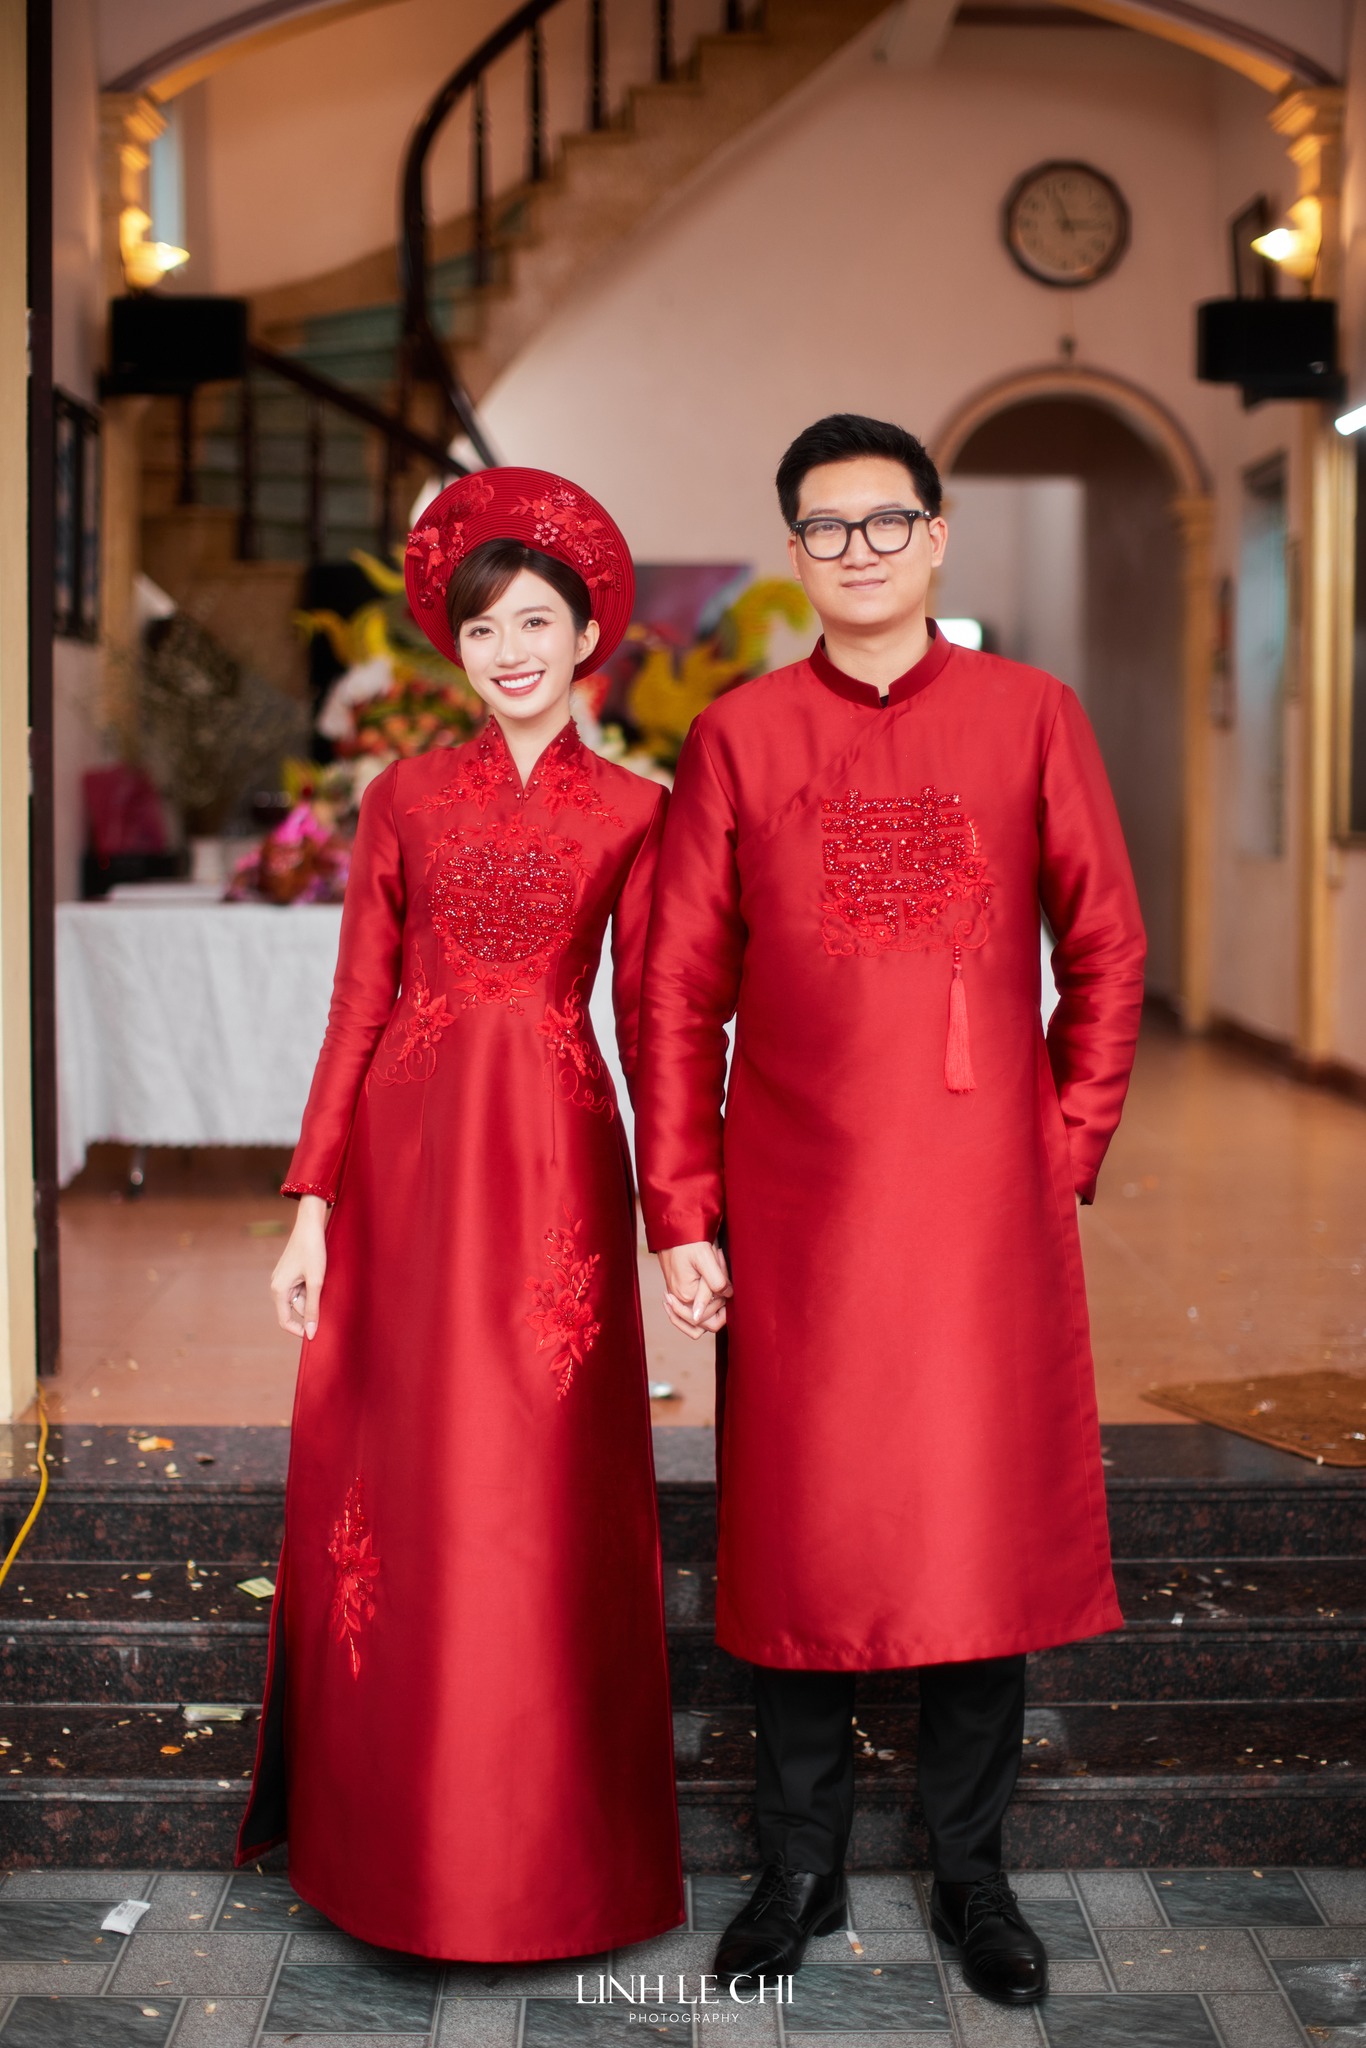 Lễ cưới ngập sắc đỏ của diễn viên Ngọc Huyền và cháu trai NSUT Chí Trung, cô dâu khóc nhận của hồi môn - ảnh 1